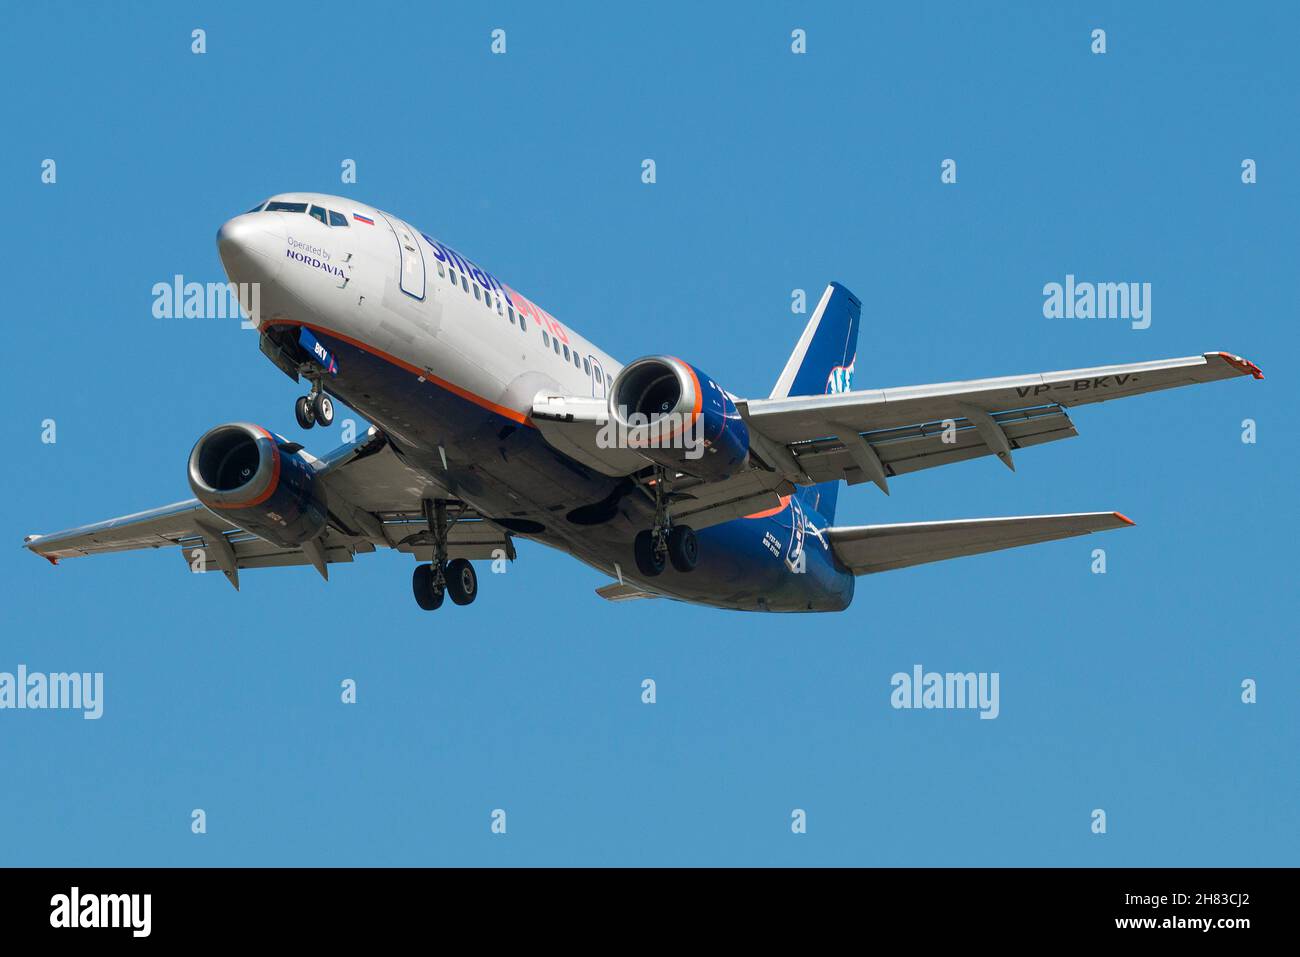 SANKT PETERSBURG, RUSSLAND - 13. MAI 2019: Flugzeug Boeing 737-505 (VP-BKV) der Smartavia Airlines auf dem Gleitschirmweg im blauen wolkenlosen Himmel Stockfoto